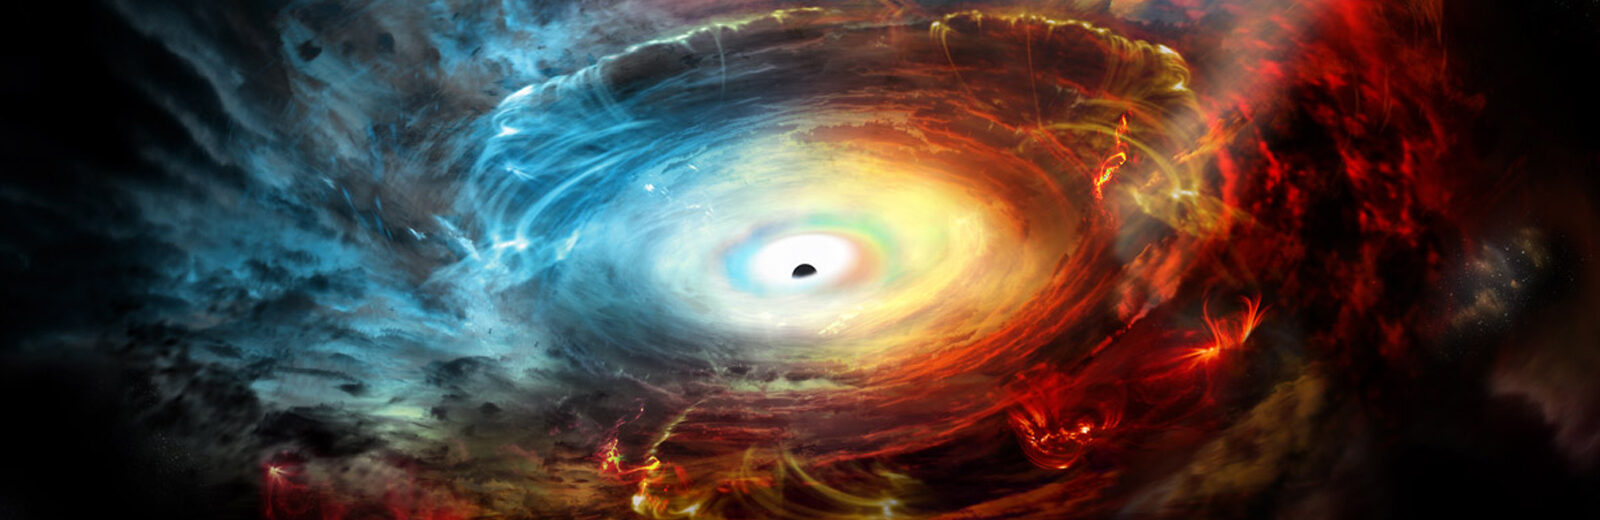 Observan agujero negro escondido en los gases que exhala  